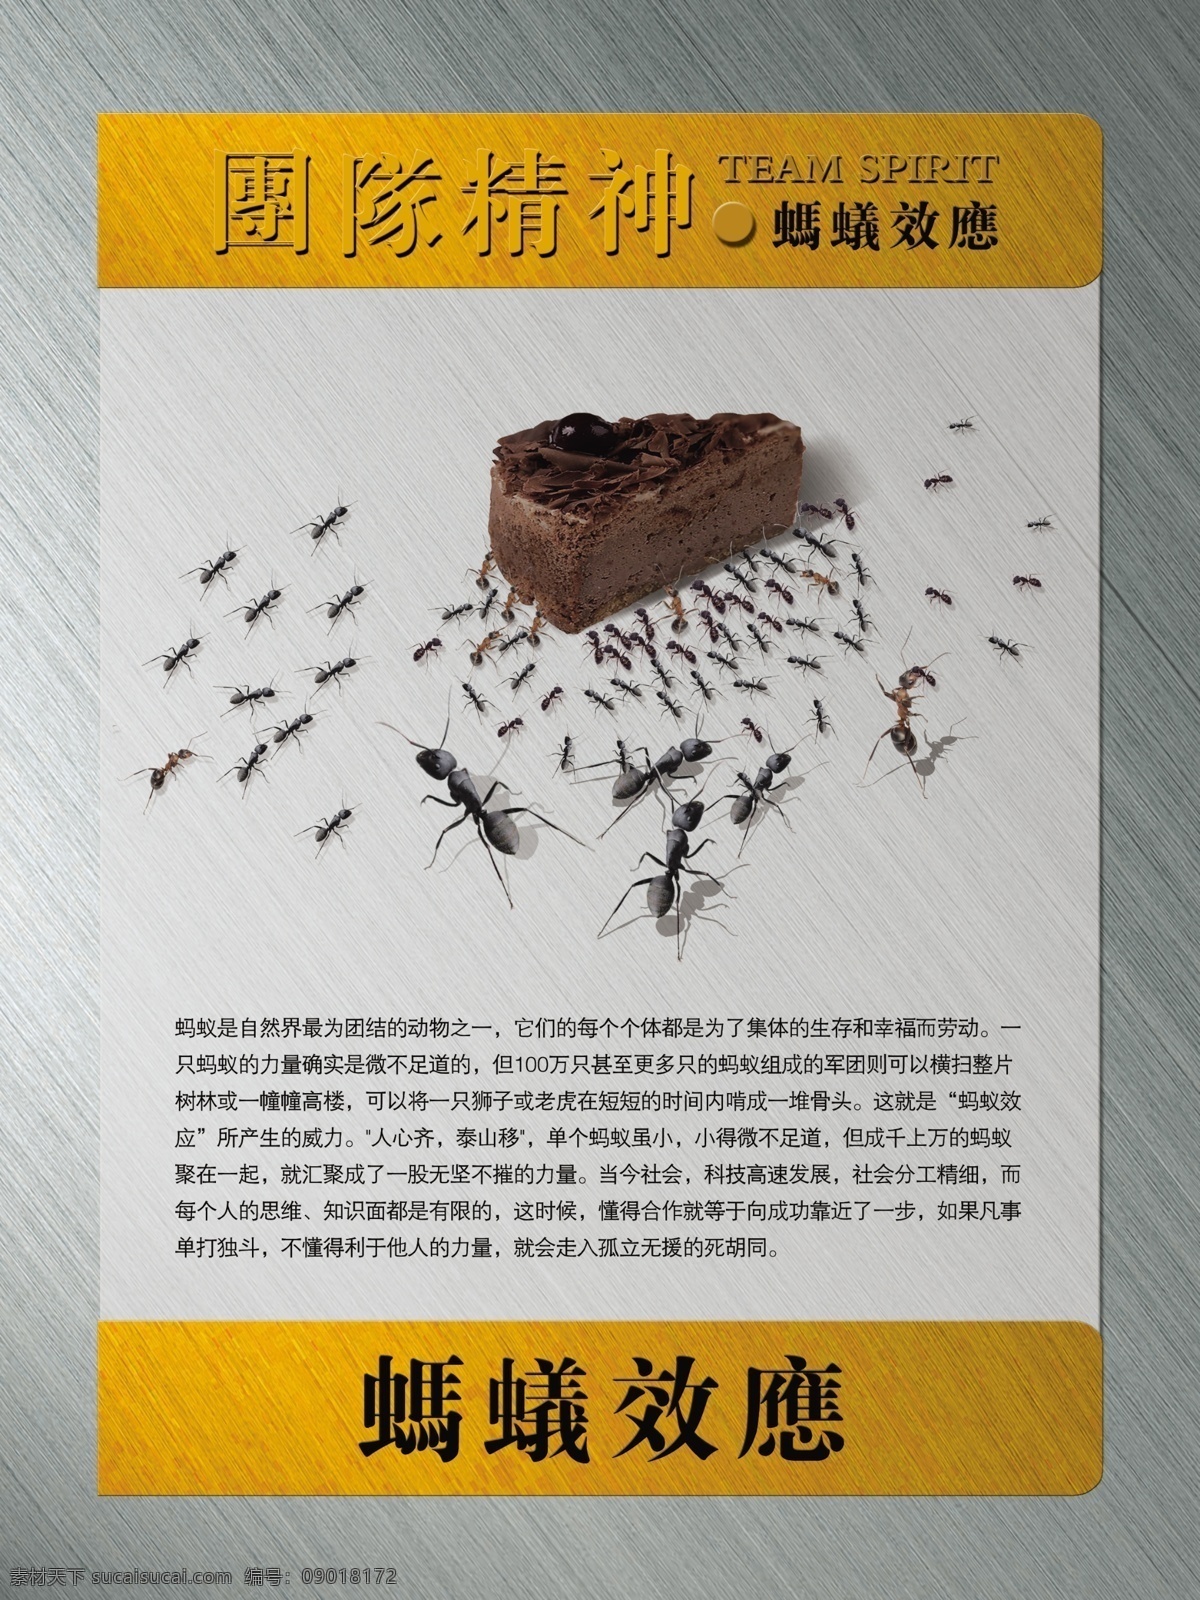 蚂蚁效应 企业文化 企业标语 企业精神 文化海报 办公室海报 会议室海报 培训室海报